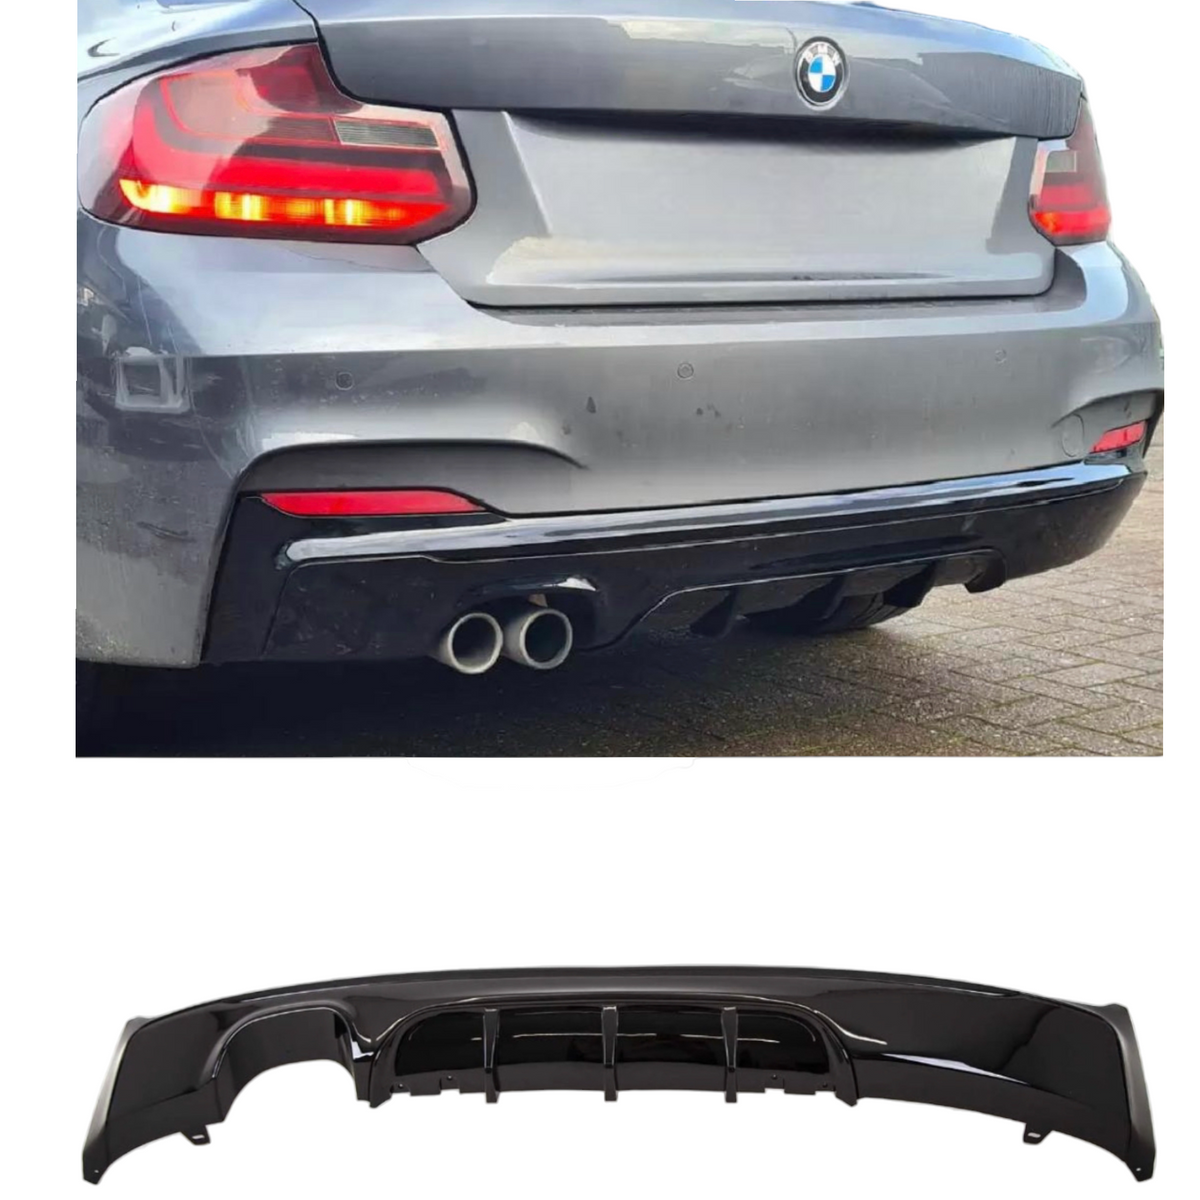 Rear Diffuser - Fits BMW F22 F23 2 Series - Twin Exit - Gloss Black - M Performance 